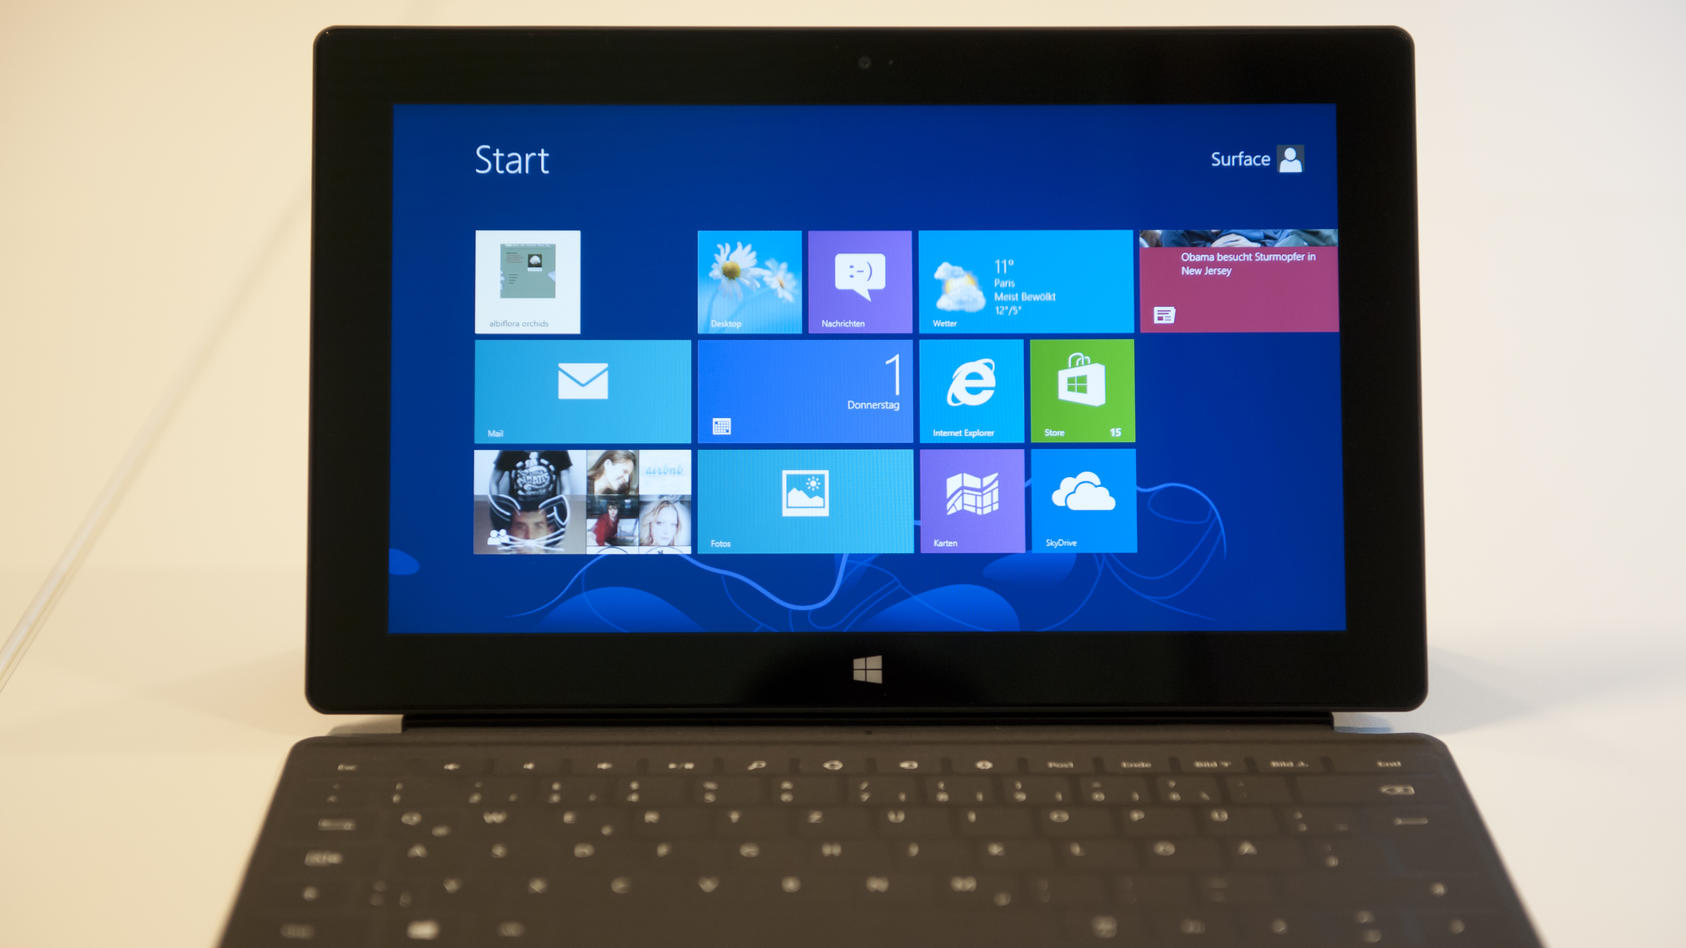 Ein Tablet-PC Microsoft Surface, auf dem das Betriebssystem Windows 8 installiert ist.